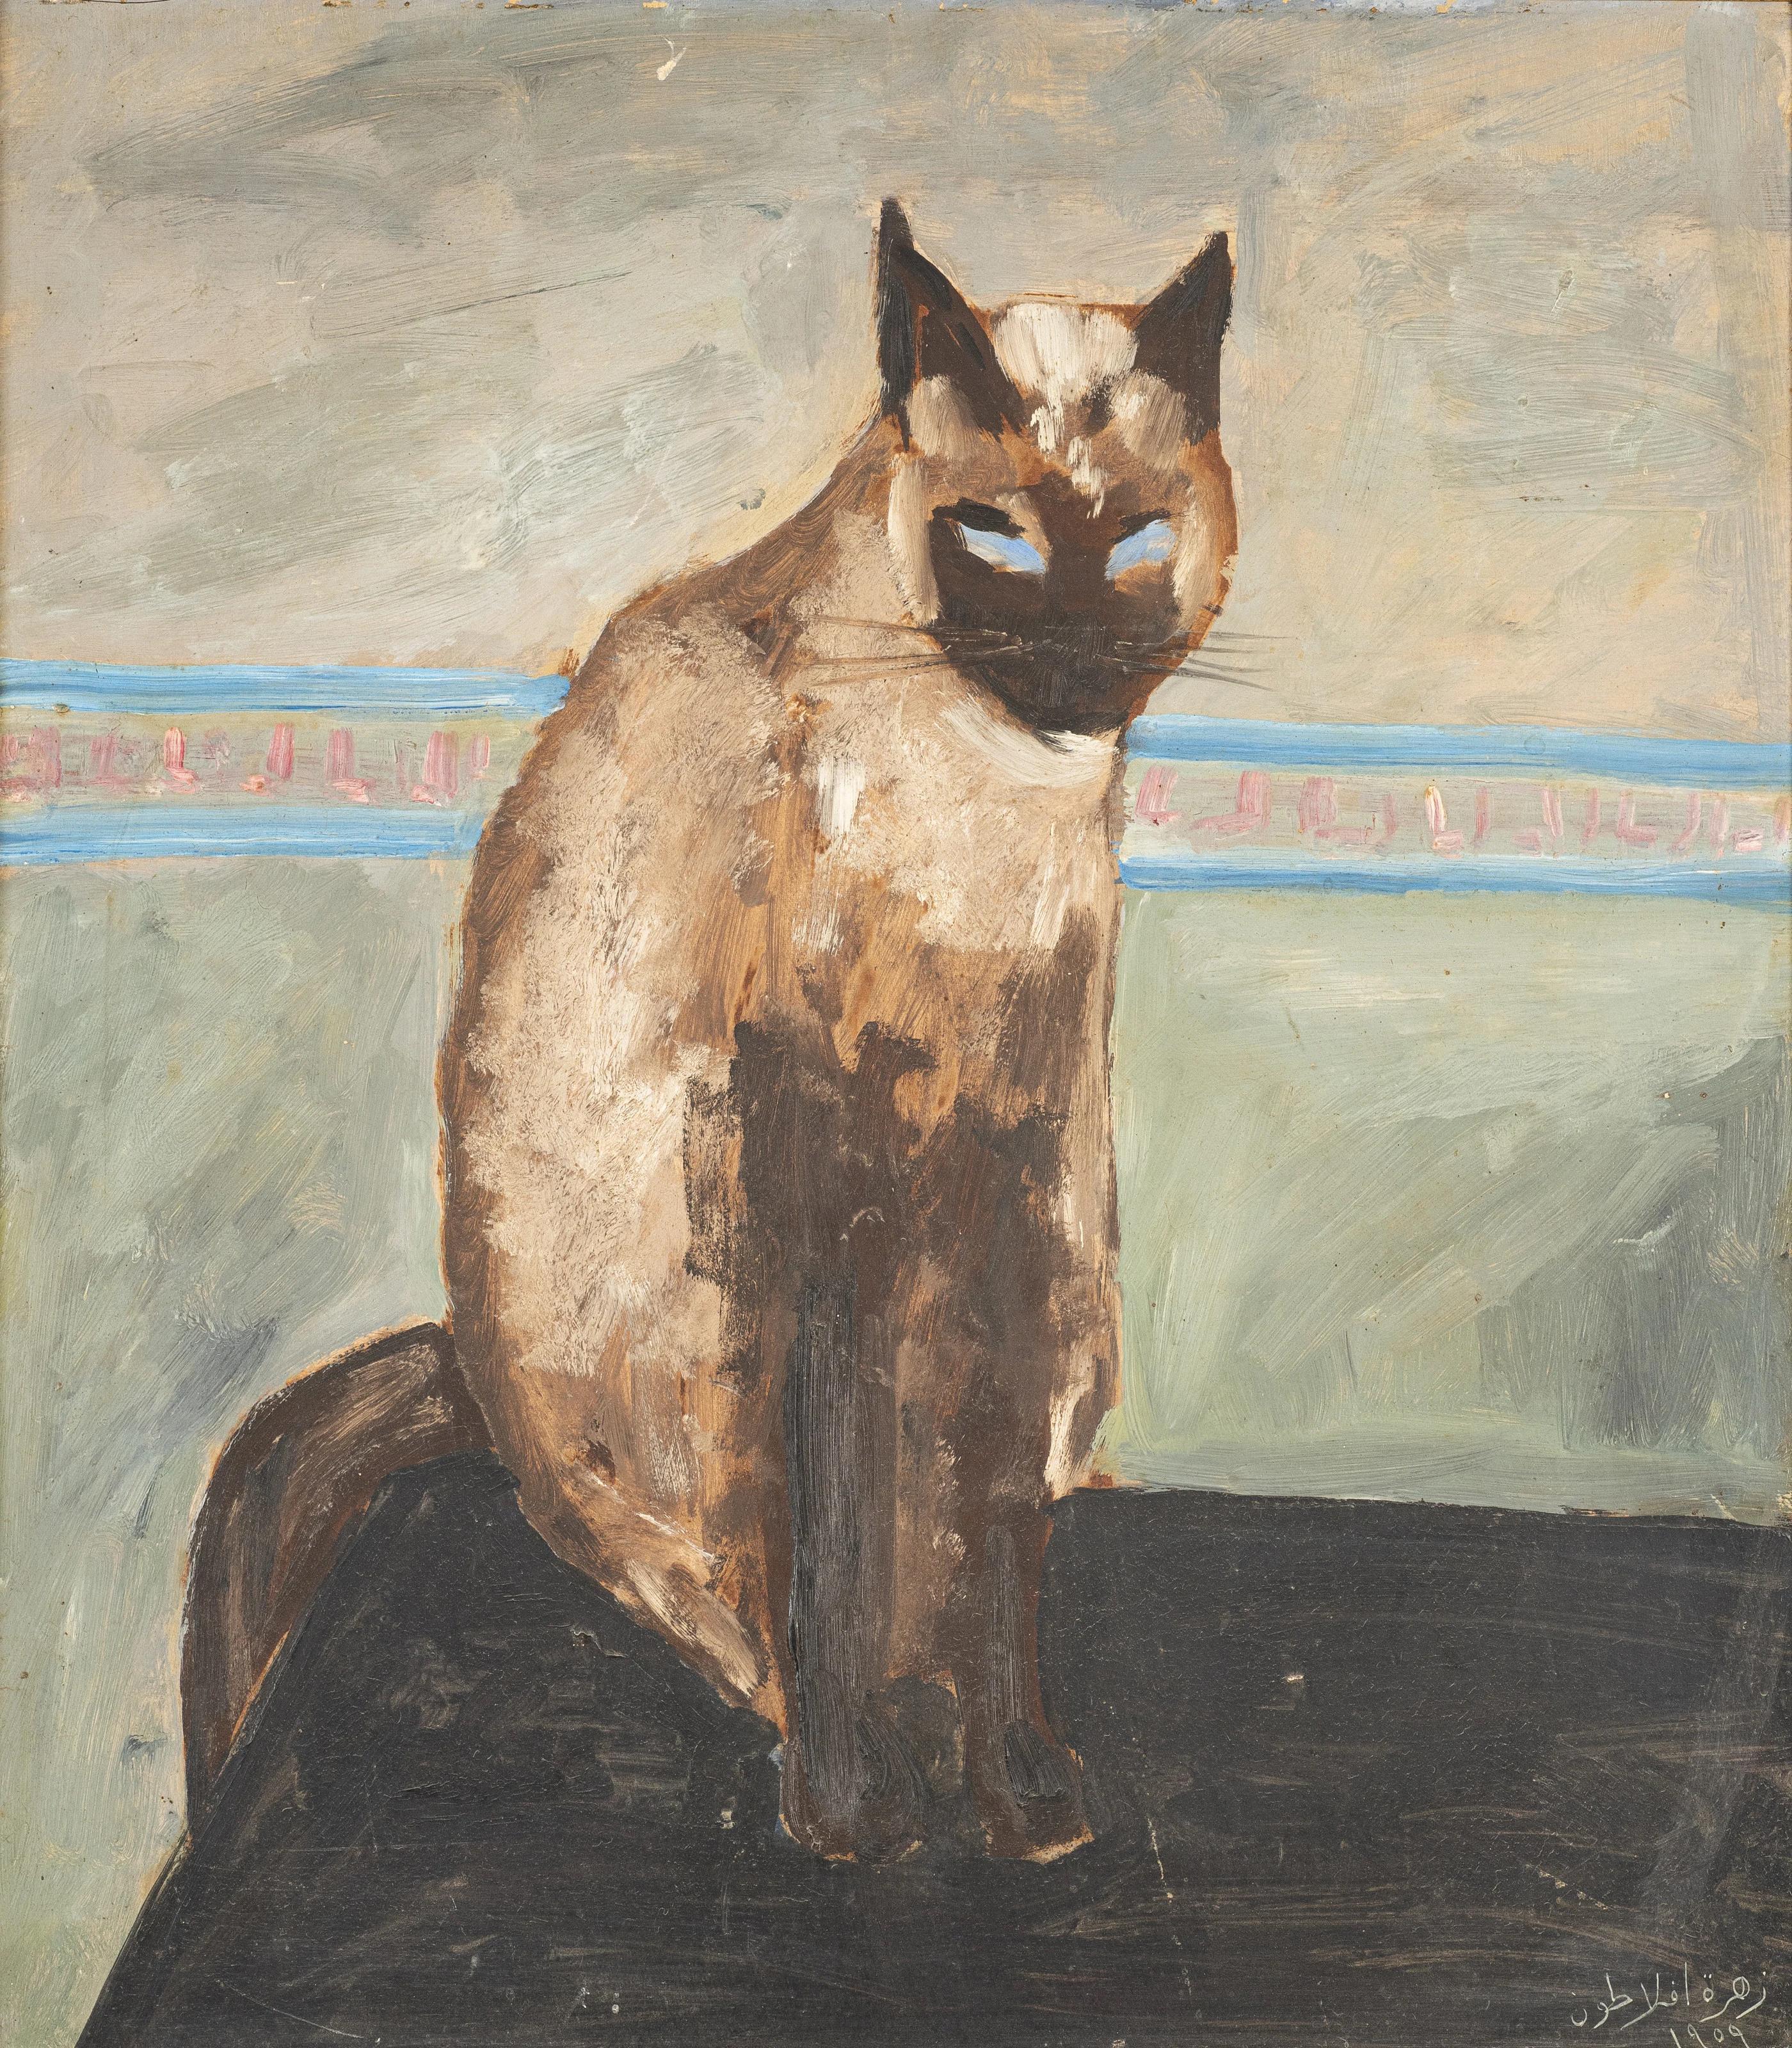 "Le Chat I" peinture à l'huile 20" x 19" pouces (1959) de Zohra Efflatoun

signé et daté

Zohra Efflatoun est issue d'une famille d'artistes. Sa demi-sœur Inji était une peintre renommée du Caire. Tandis que Zohra, qui vivait à Alexandrie, a étudié